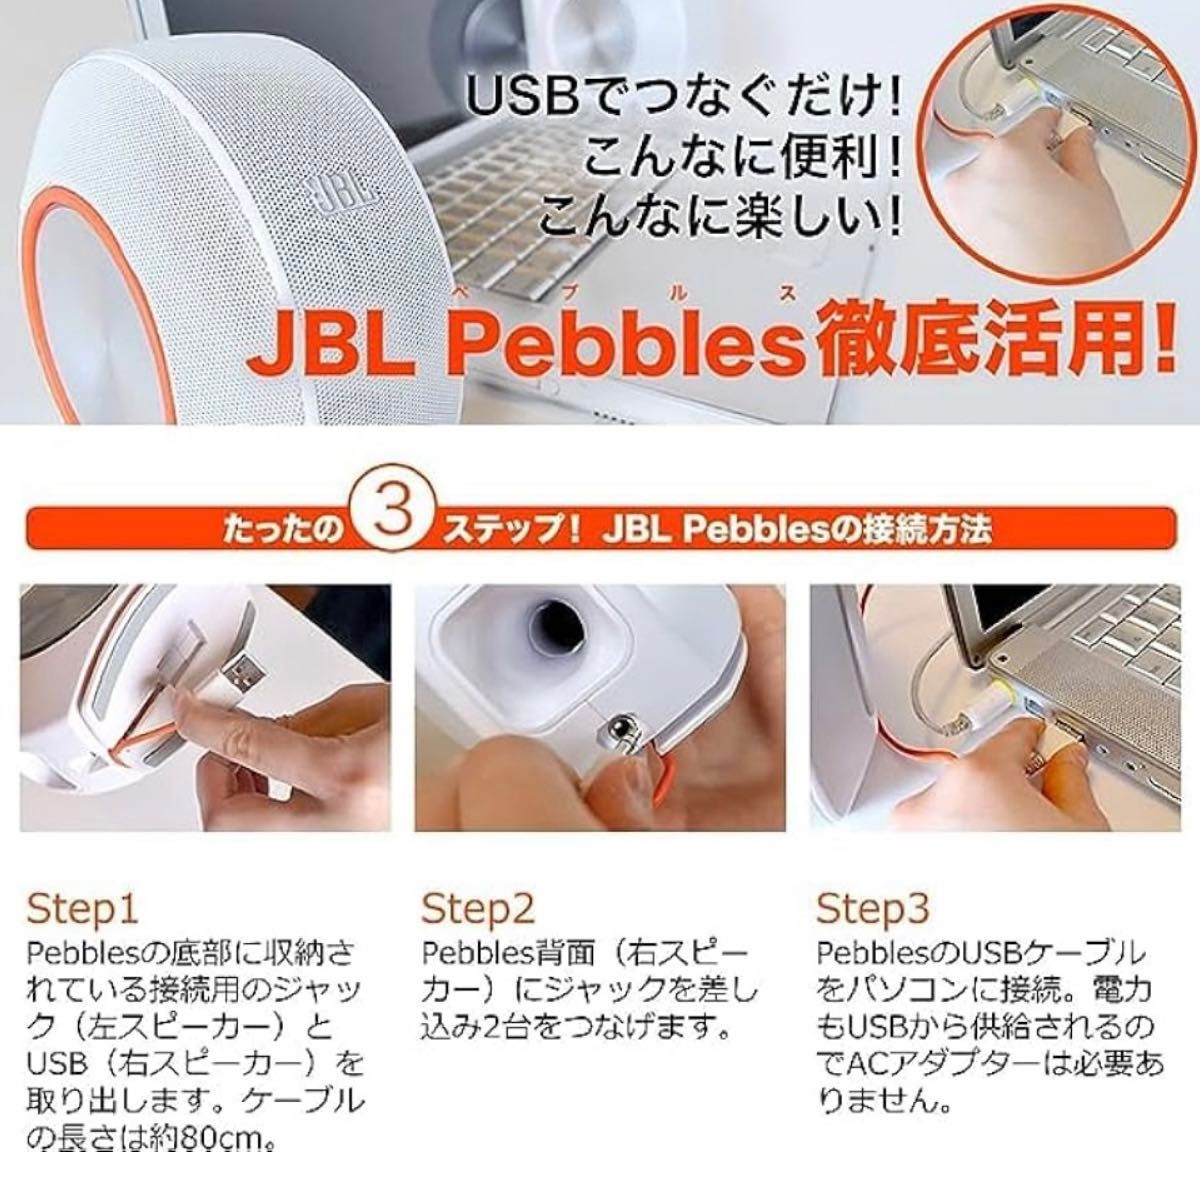 JBL Pebbles パソコン PC スピーカー バスパワード オーディオ ミュージック ステレオ USB DAC iPhone